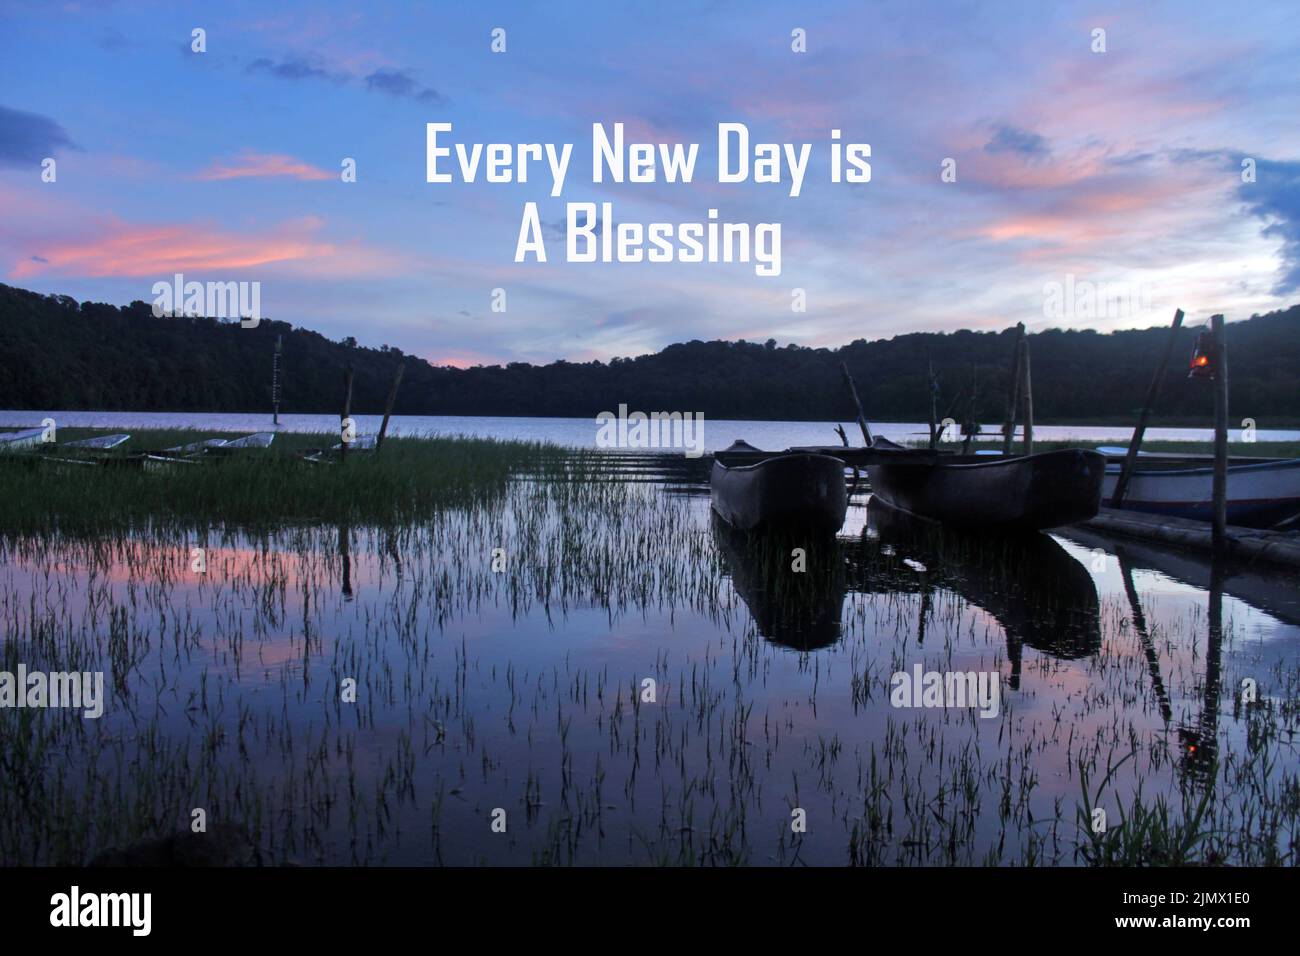 Inspirierendes Morgenzitat - jeder neue Tag ist Ein Segen. Mit blauem Sonnenaufgang über dem See mit hölzernen Fischerbooten, grünem Gras und seiner Wasserspiegelung Stockfoto